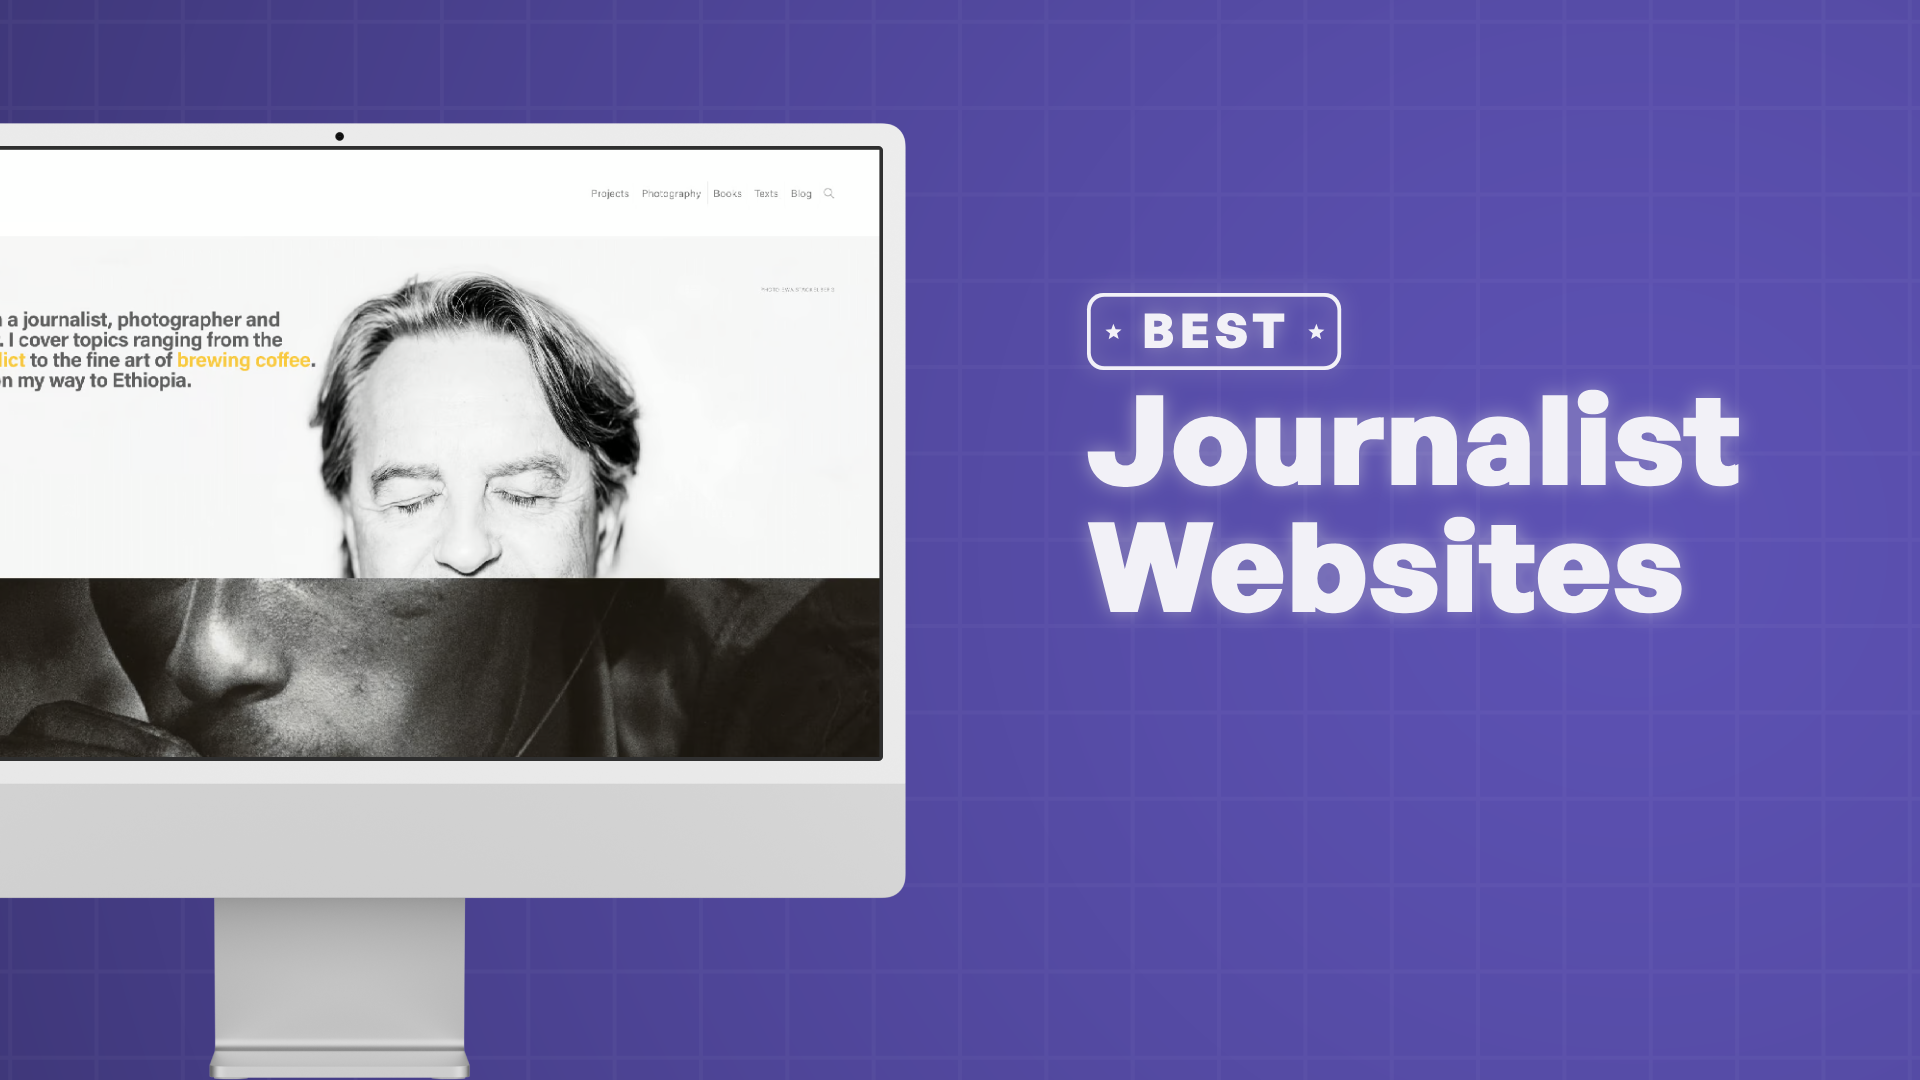 "Best Journalist Websites" with screenshots of the journalist websites